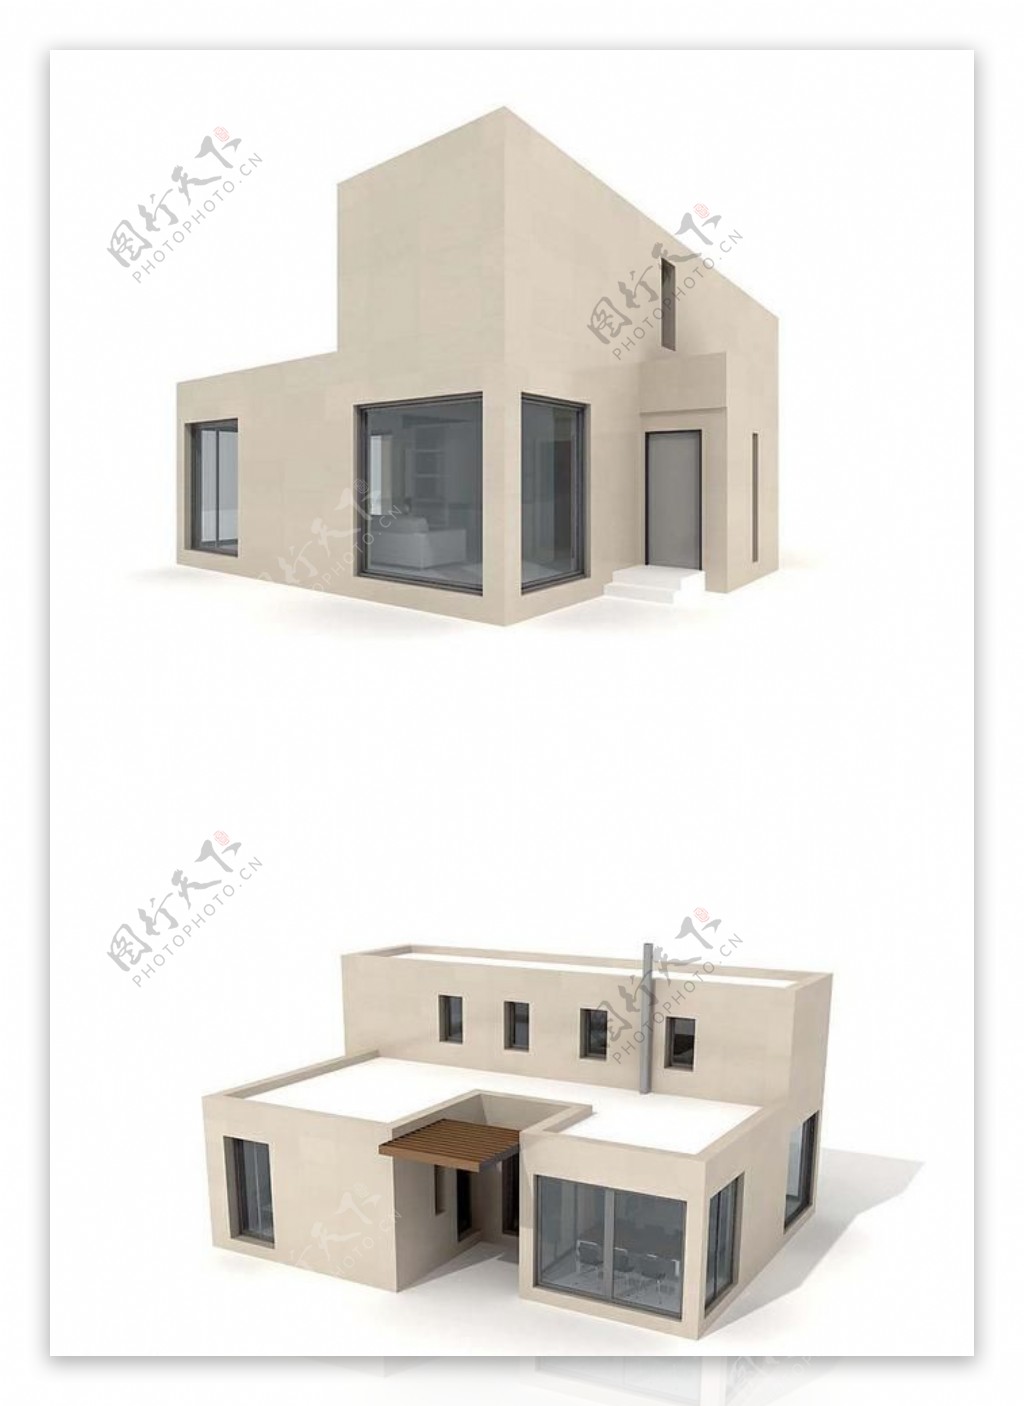 住宅模型别墅模型图片